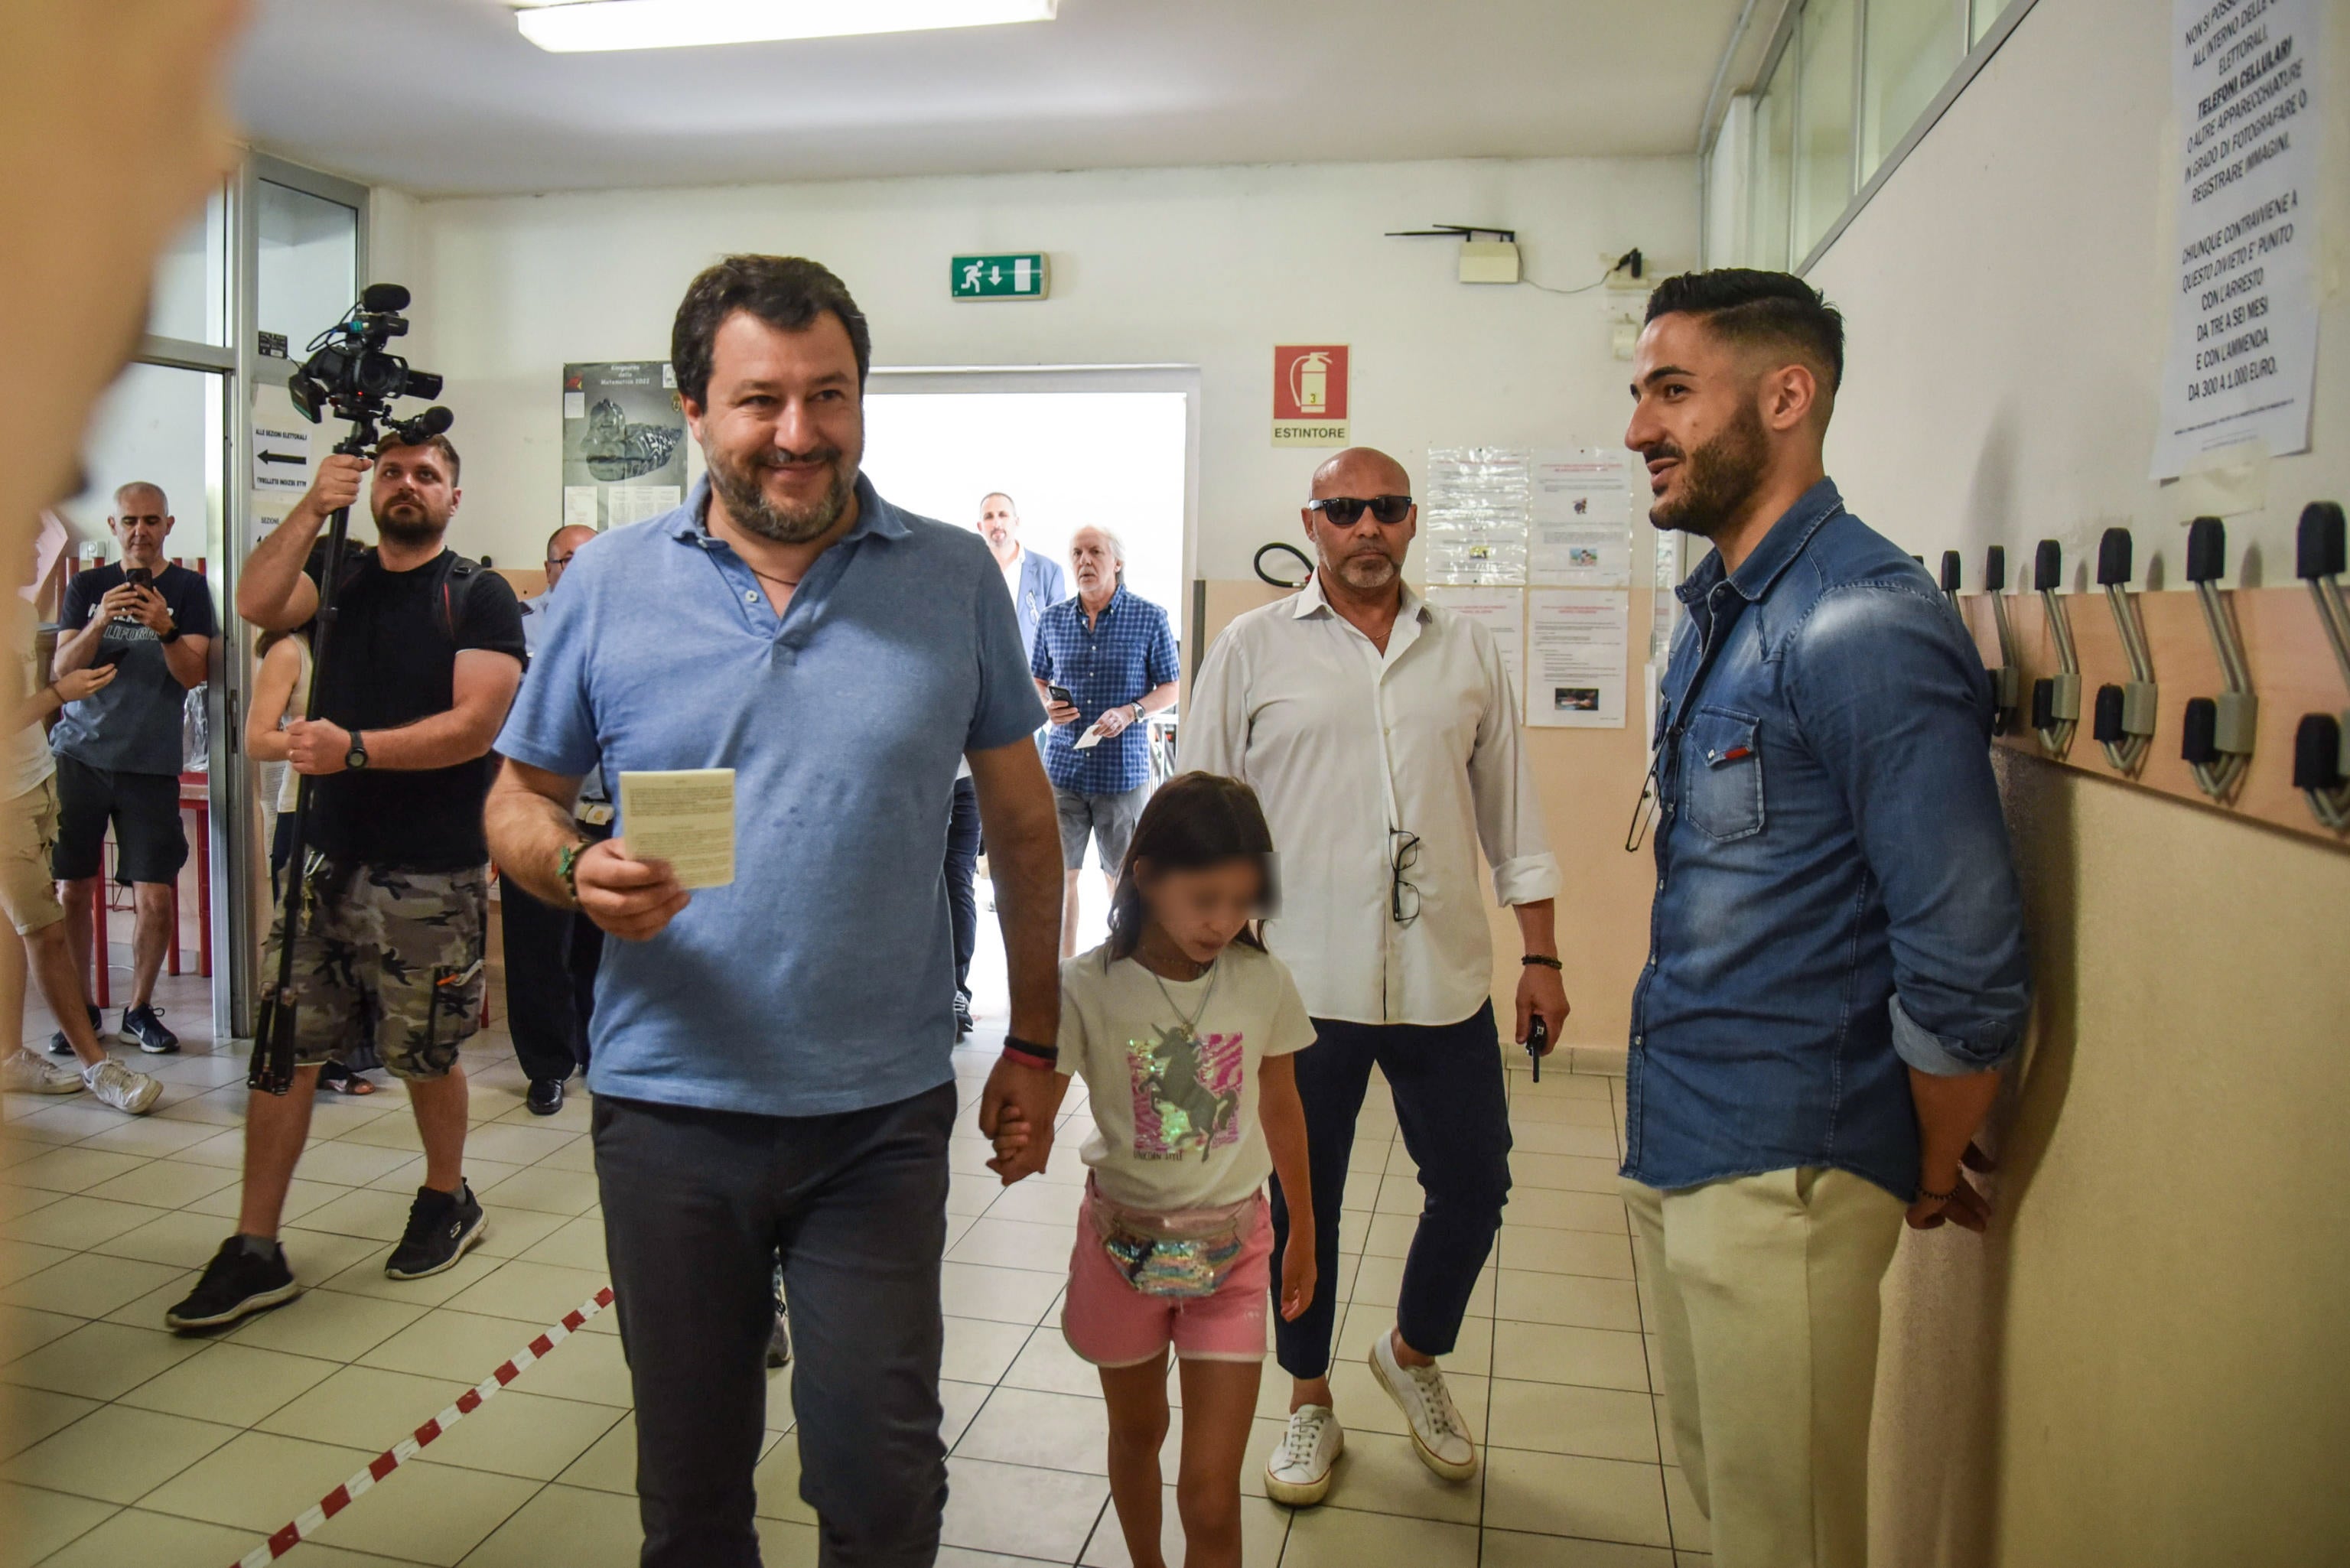 Matteo Salvini, votes in Milan on Sunday